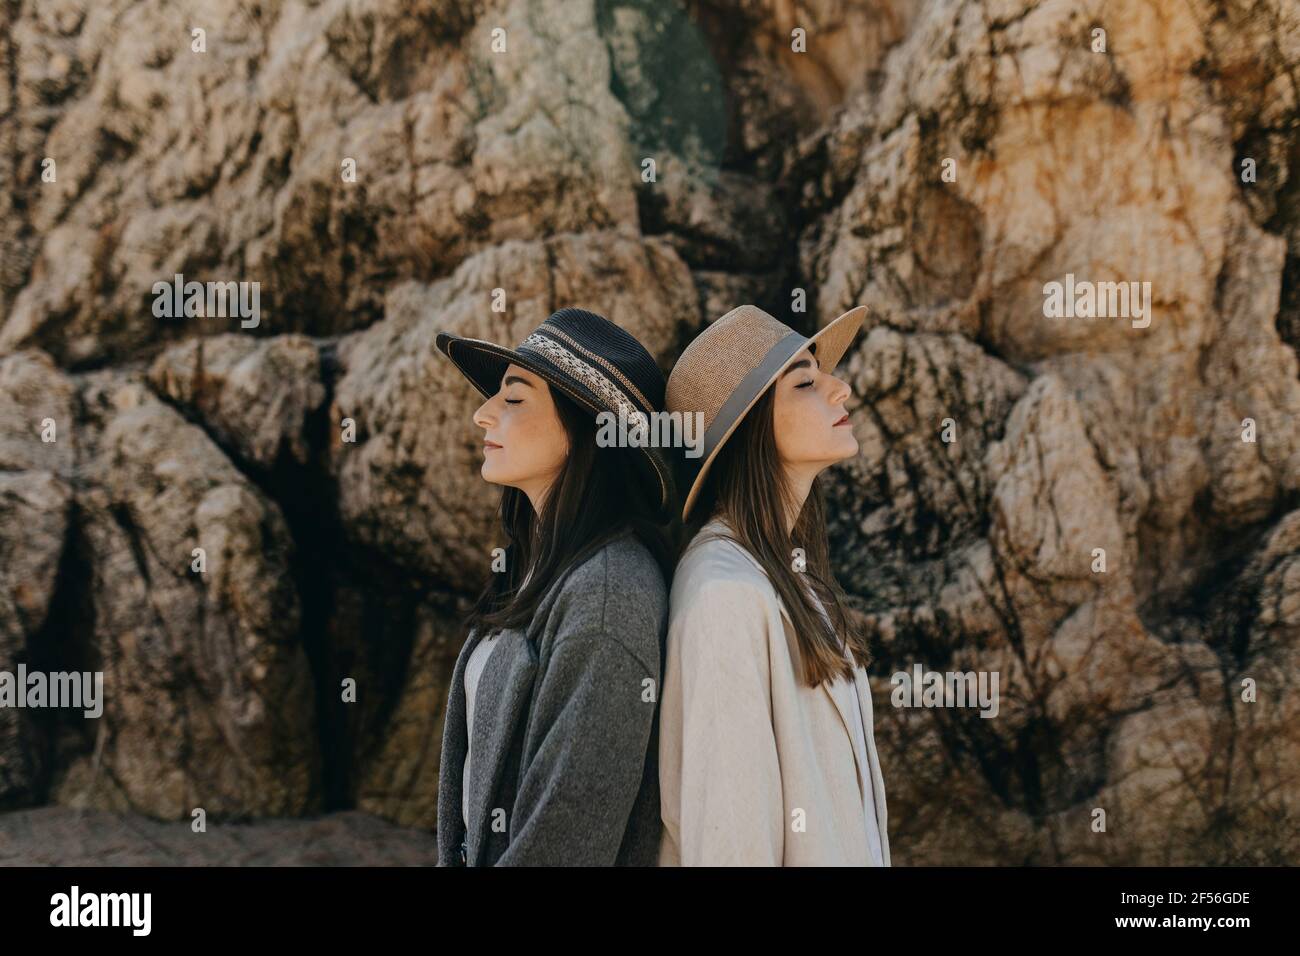 Le giovani sorelle tornano indietro dalla formazione rocciosa Foto Stock